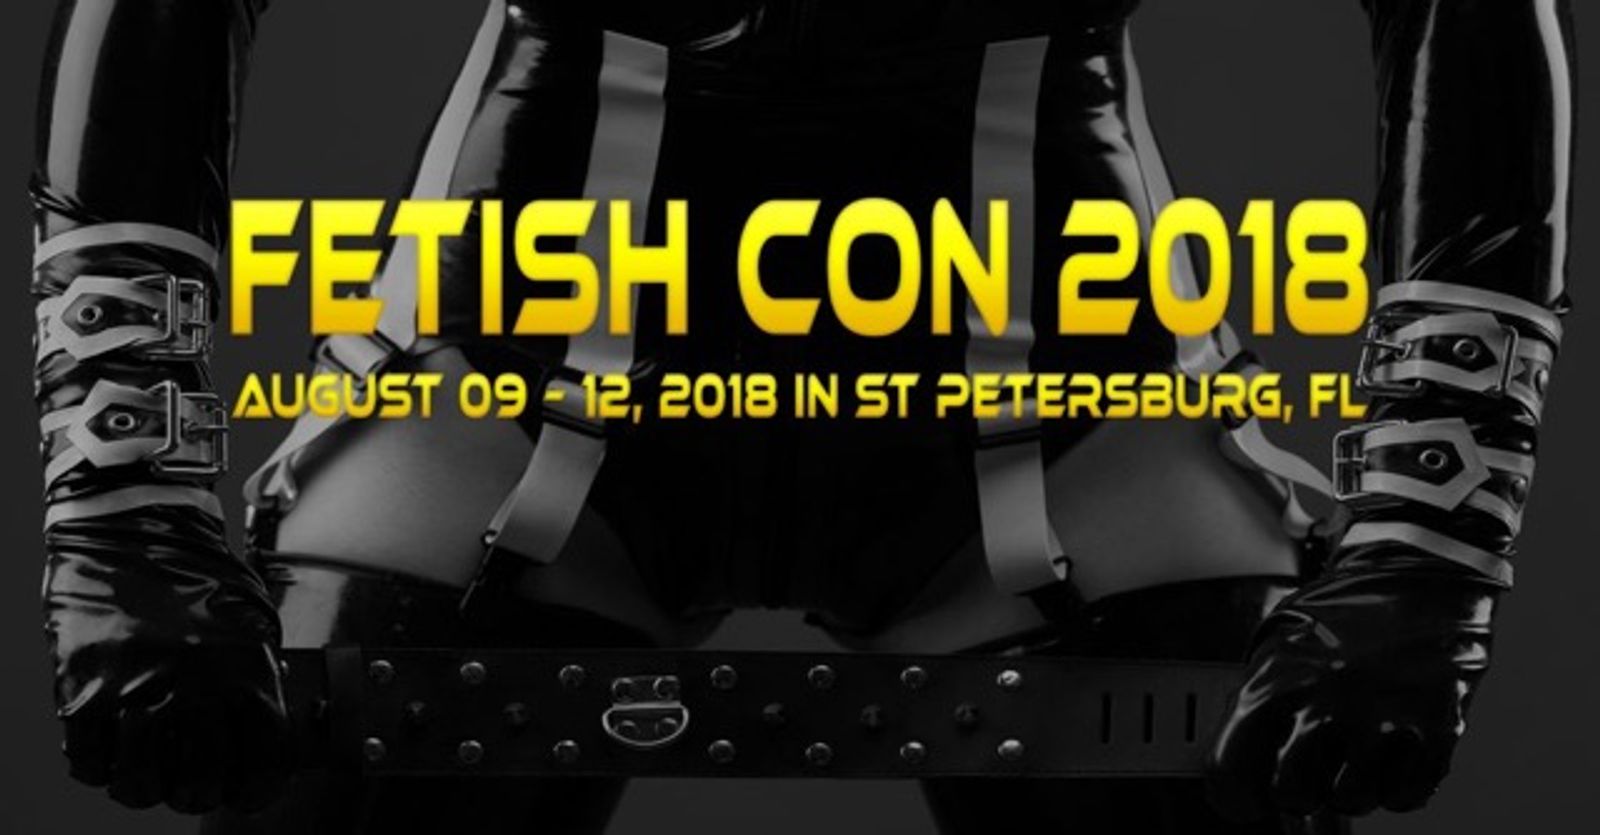 Fetish Con Announces Dates & Location For 2018 Fest